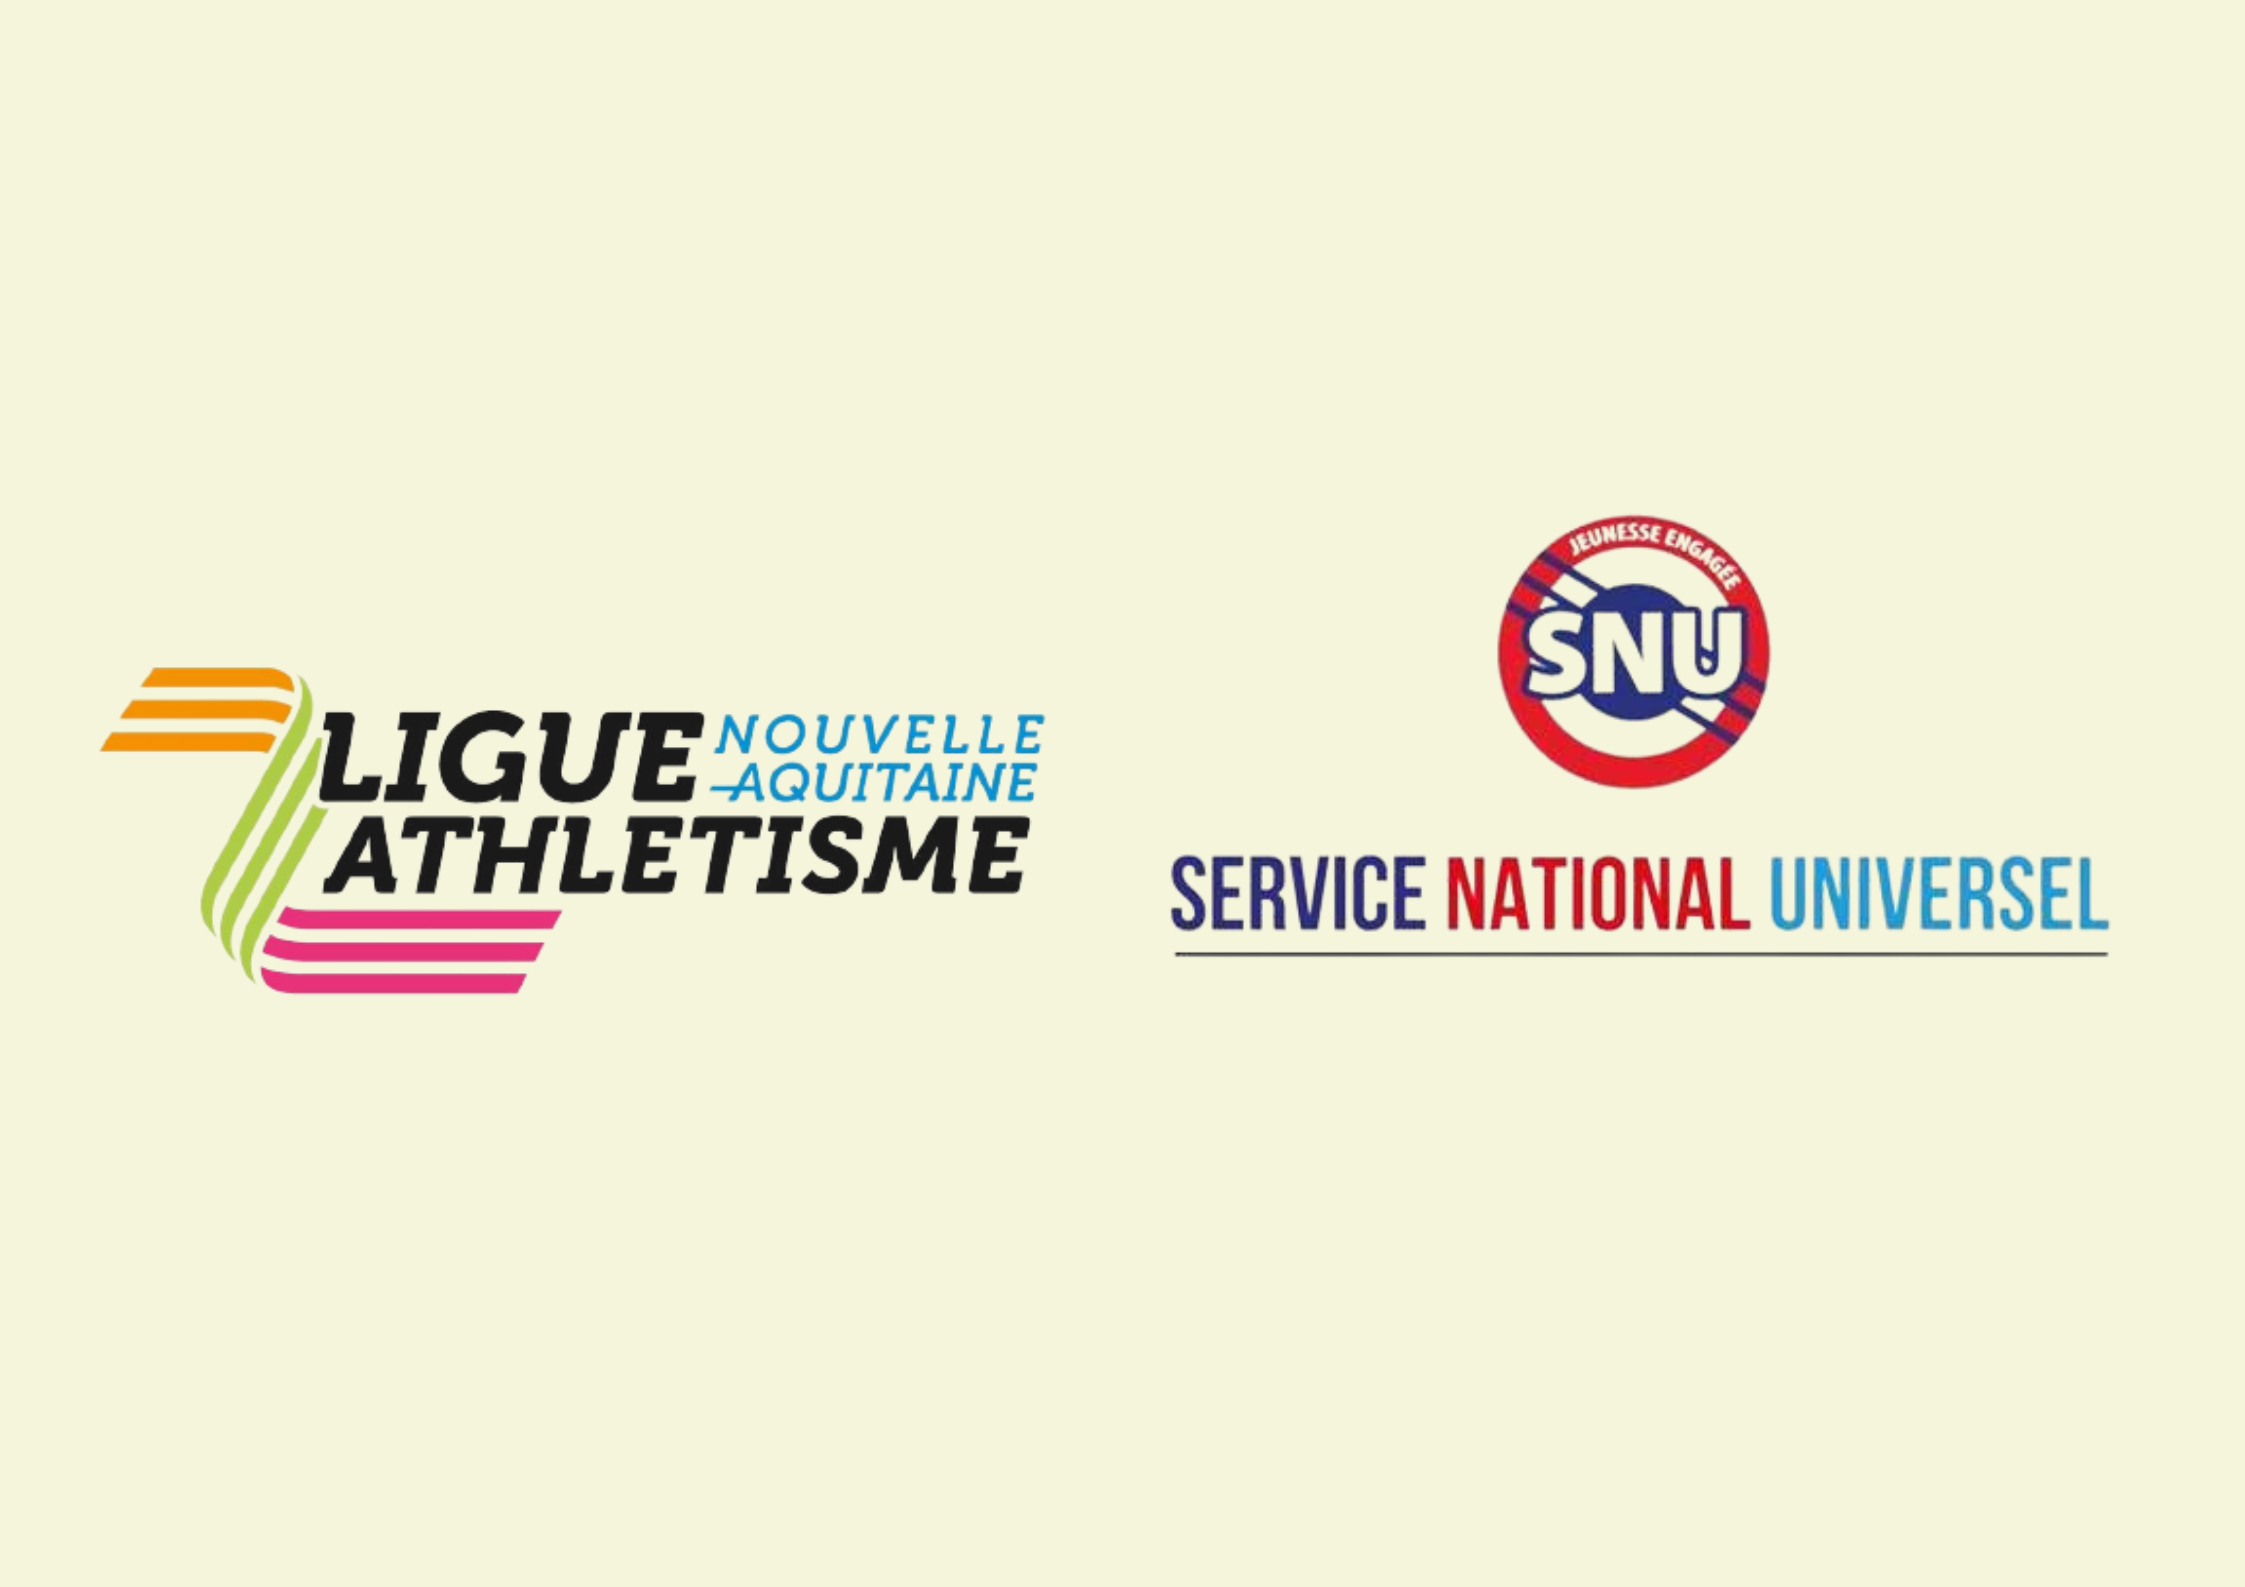 L’Athlétisme s’invite au Service National Universel